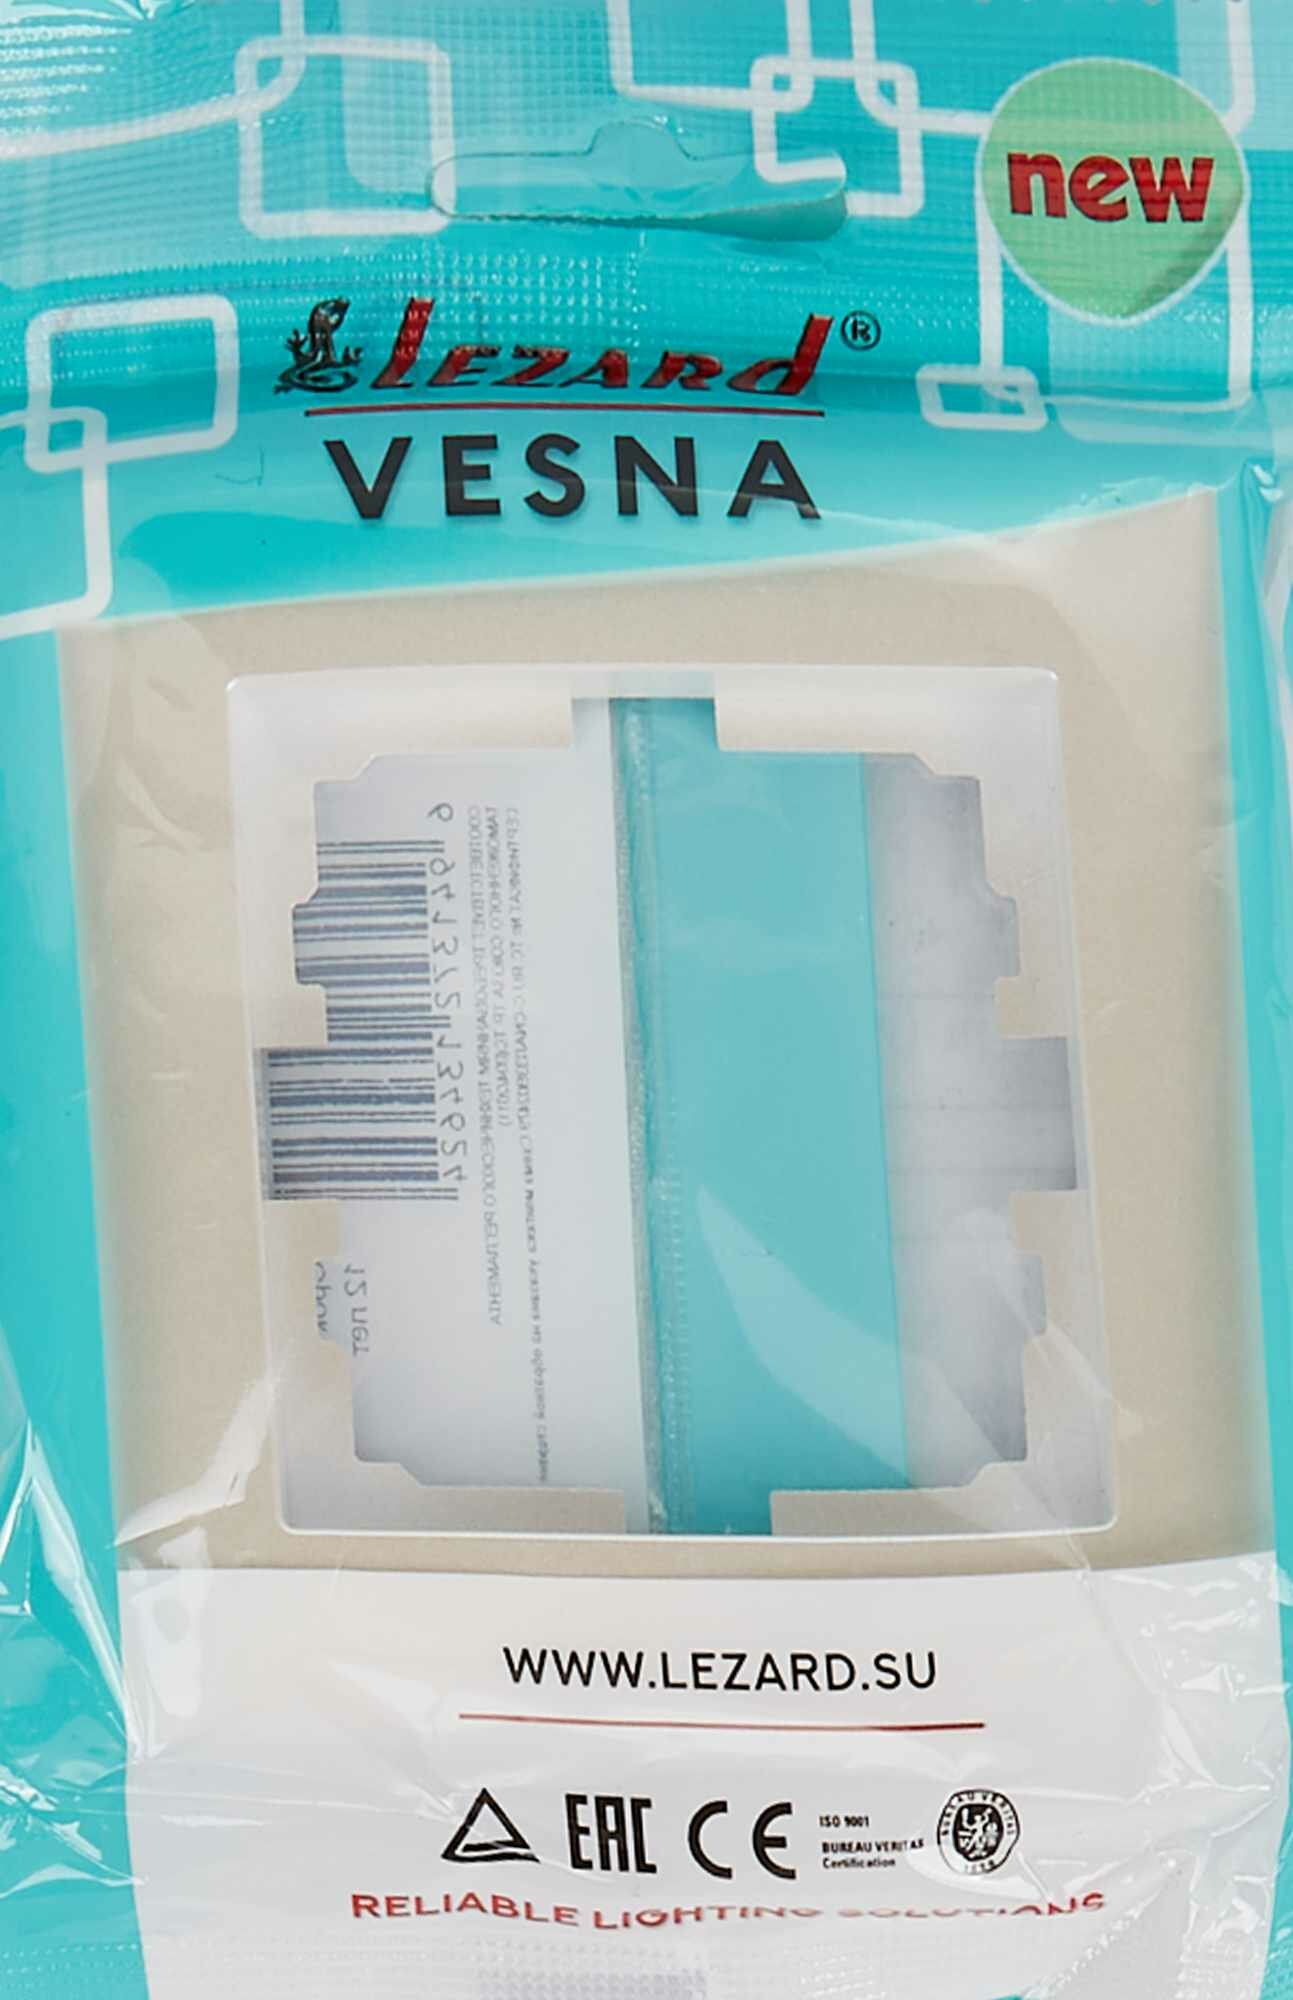 Рамка для розеток и выключателей Lezard Vesna 1 пост горизонтальная цвет жемчужный белый перламутровый - фото №6